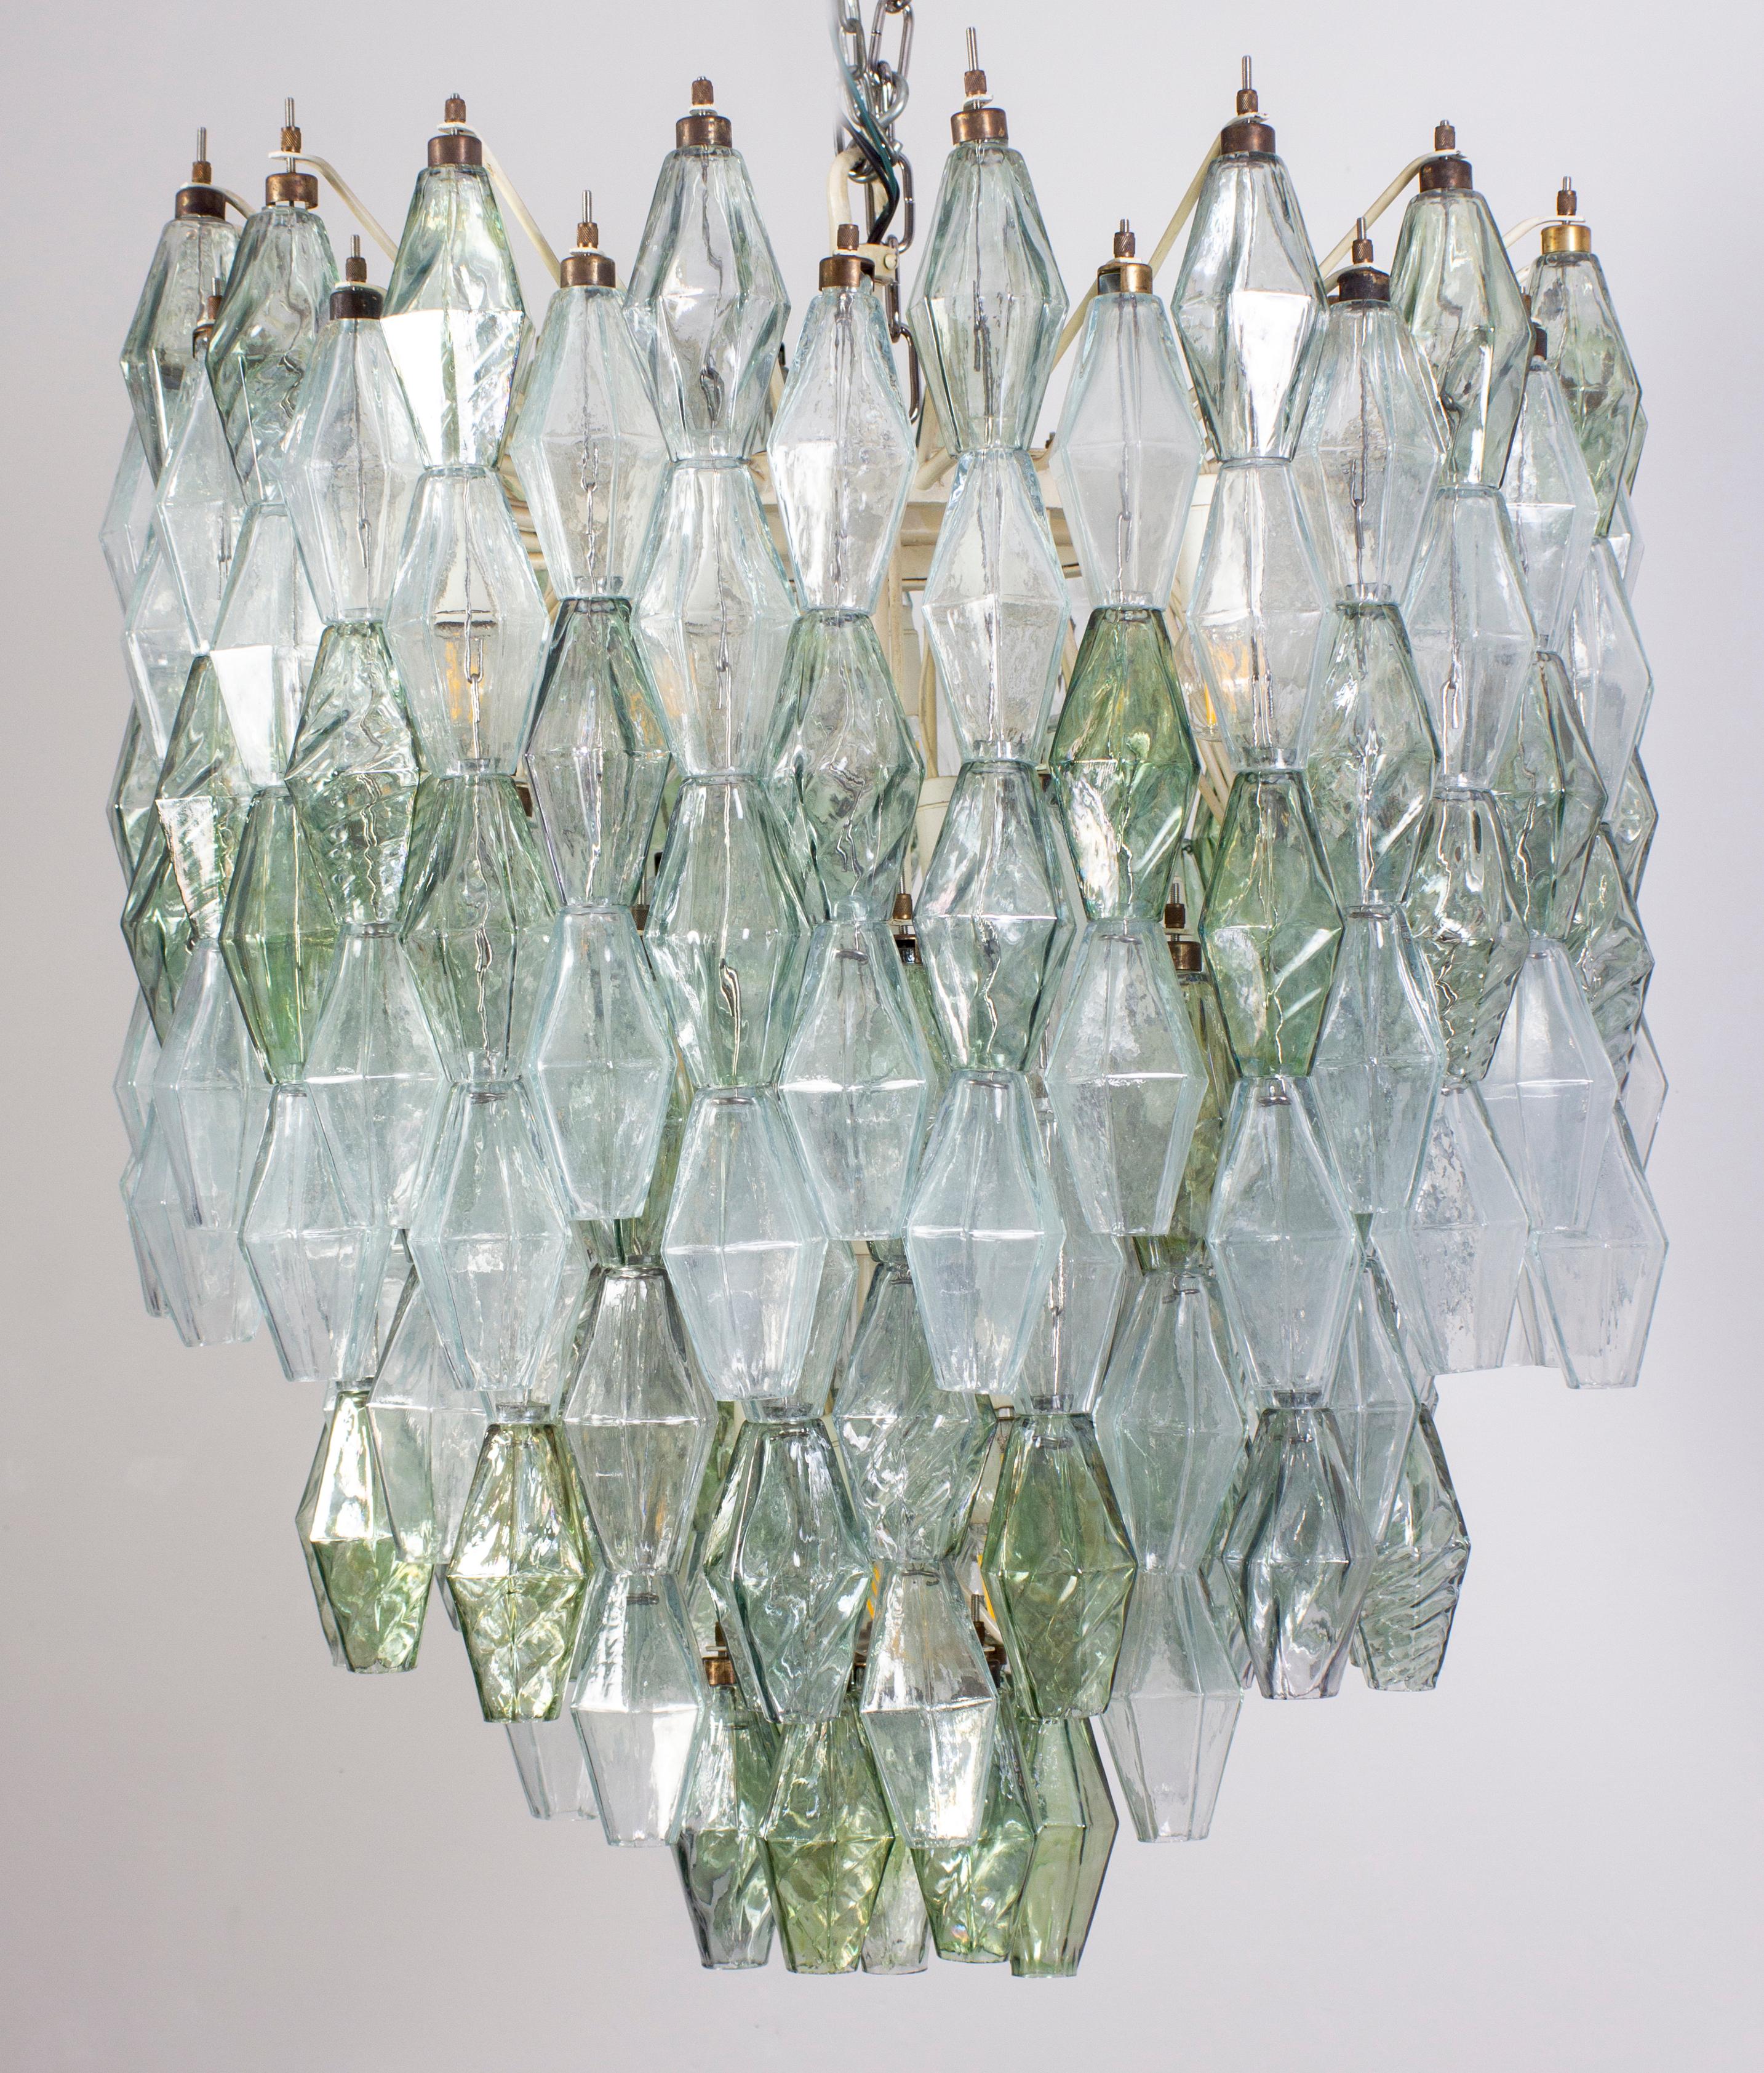 Fabelhafter originaler Polyeder-Kronleuchter aus Murano-Glas. Seltene Kombination grün und klar gefärbt poliedri hängen von der Metall-Etagen auf mehreren Ebenen.
Elfenbeinfarbener, runder Rahmen in sehr gutem und völlig originalem Zustand.
Der